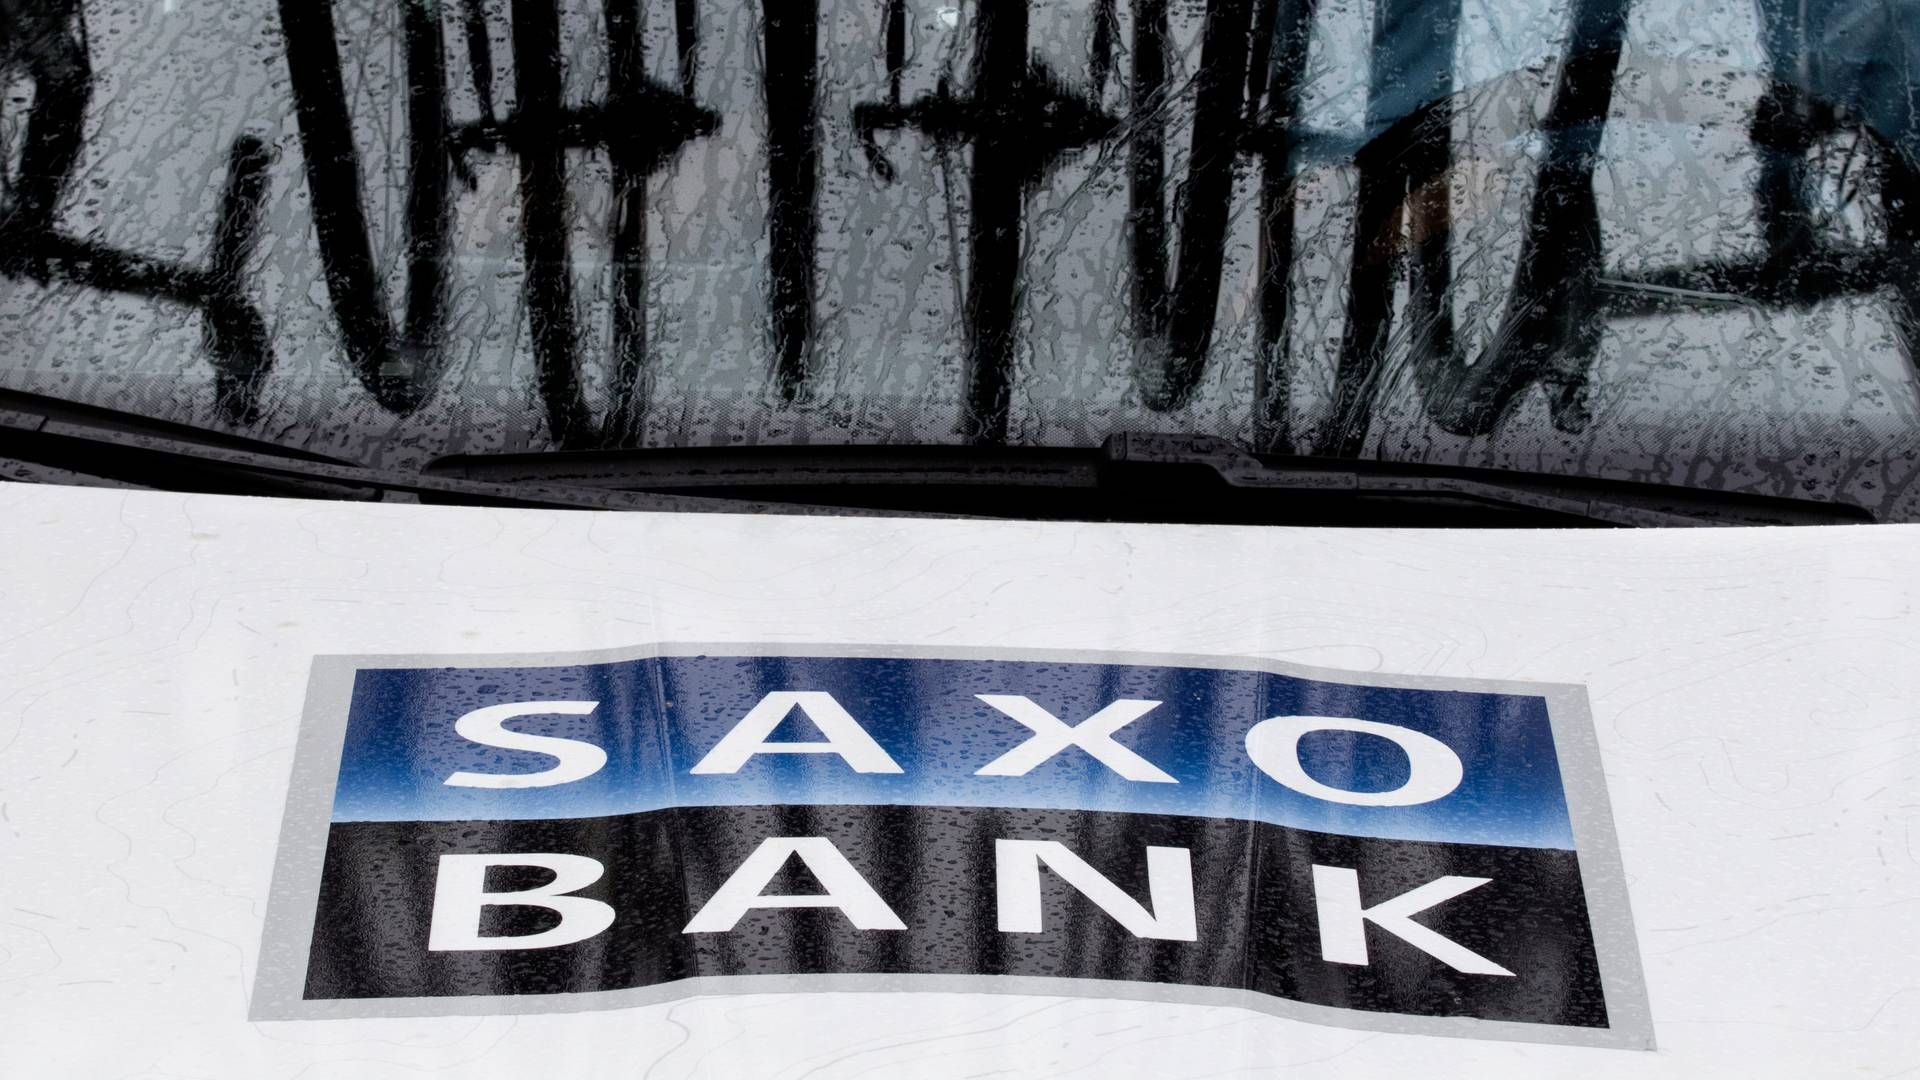 Saxo Bank har en risiko for at blive misbrugt til hvidvask eller terrorfinansiering. | Foto: Ole Steen